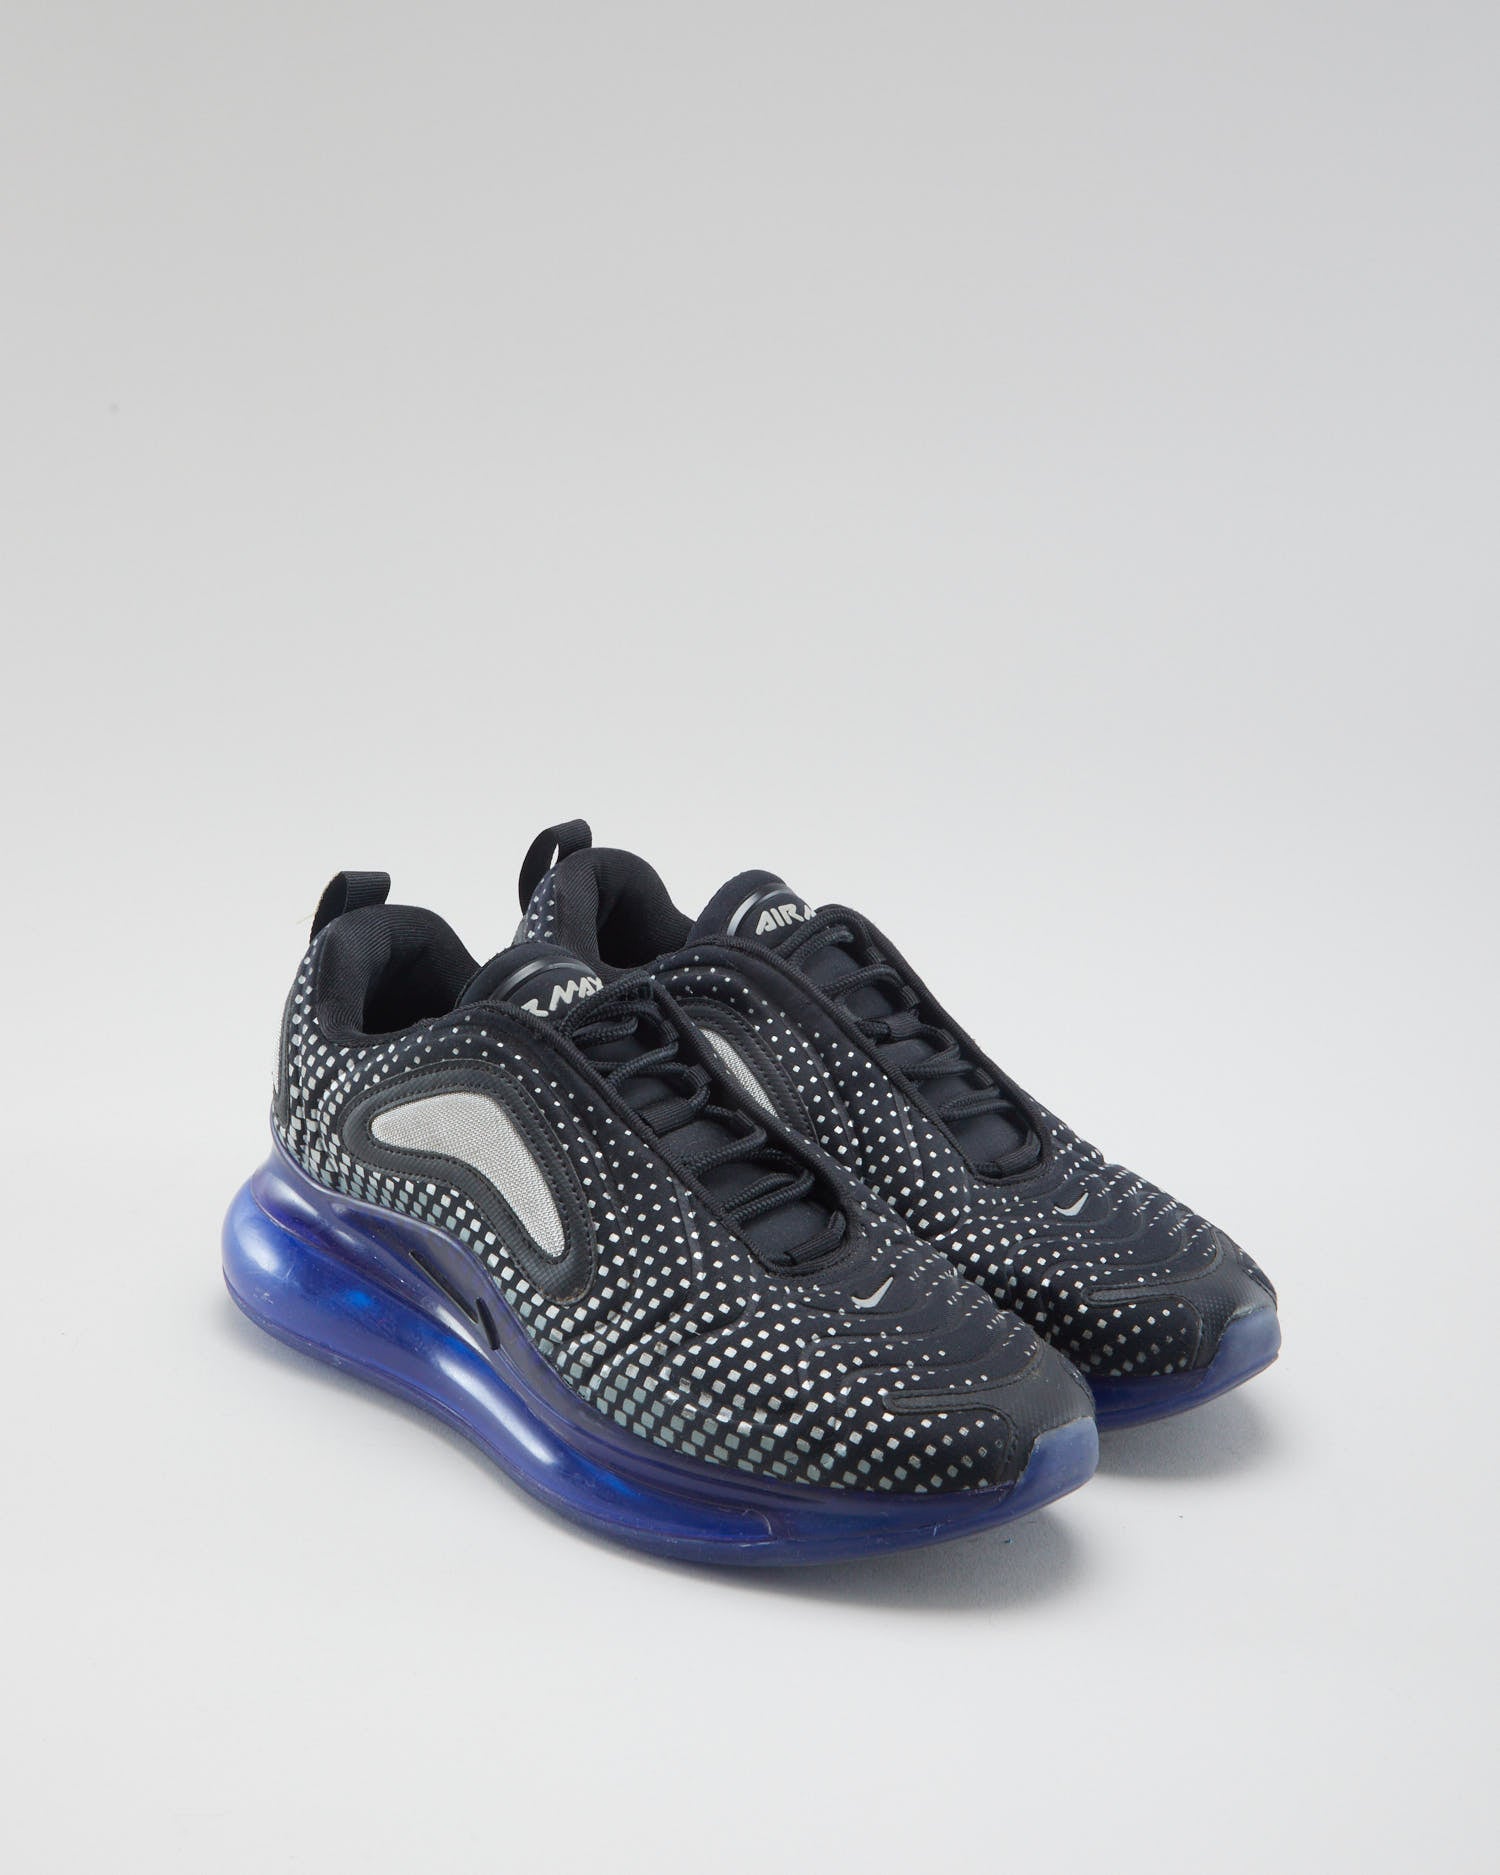 Nike Air Max 720 Pixel Black Blue - Mens UK 7